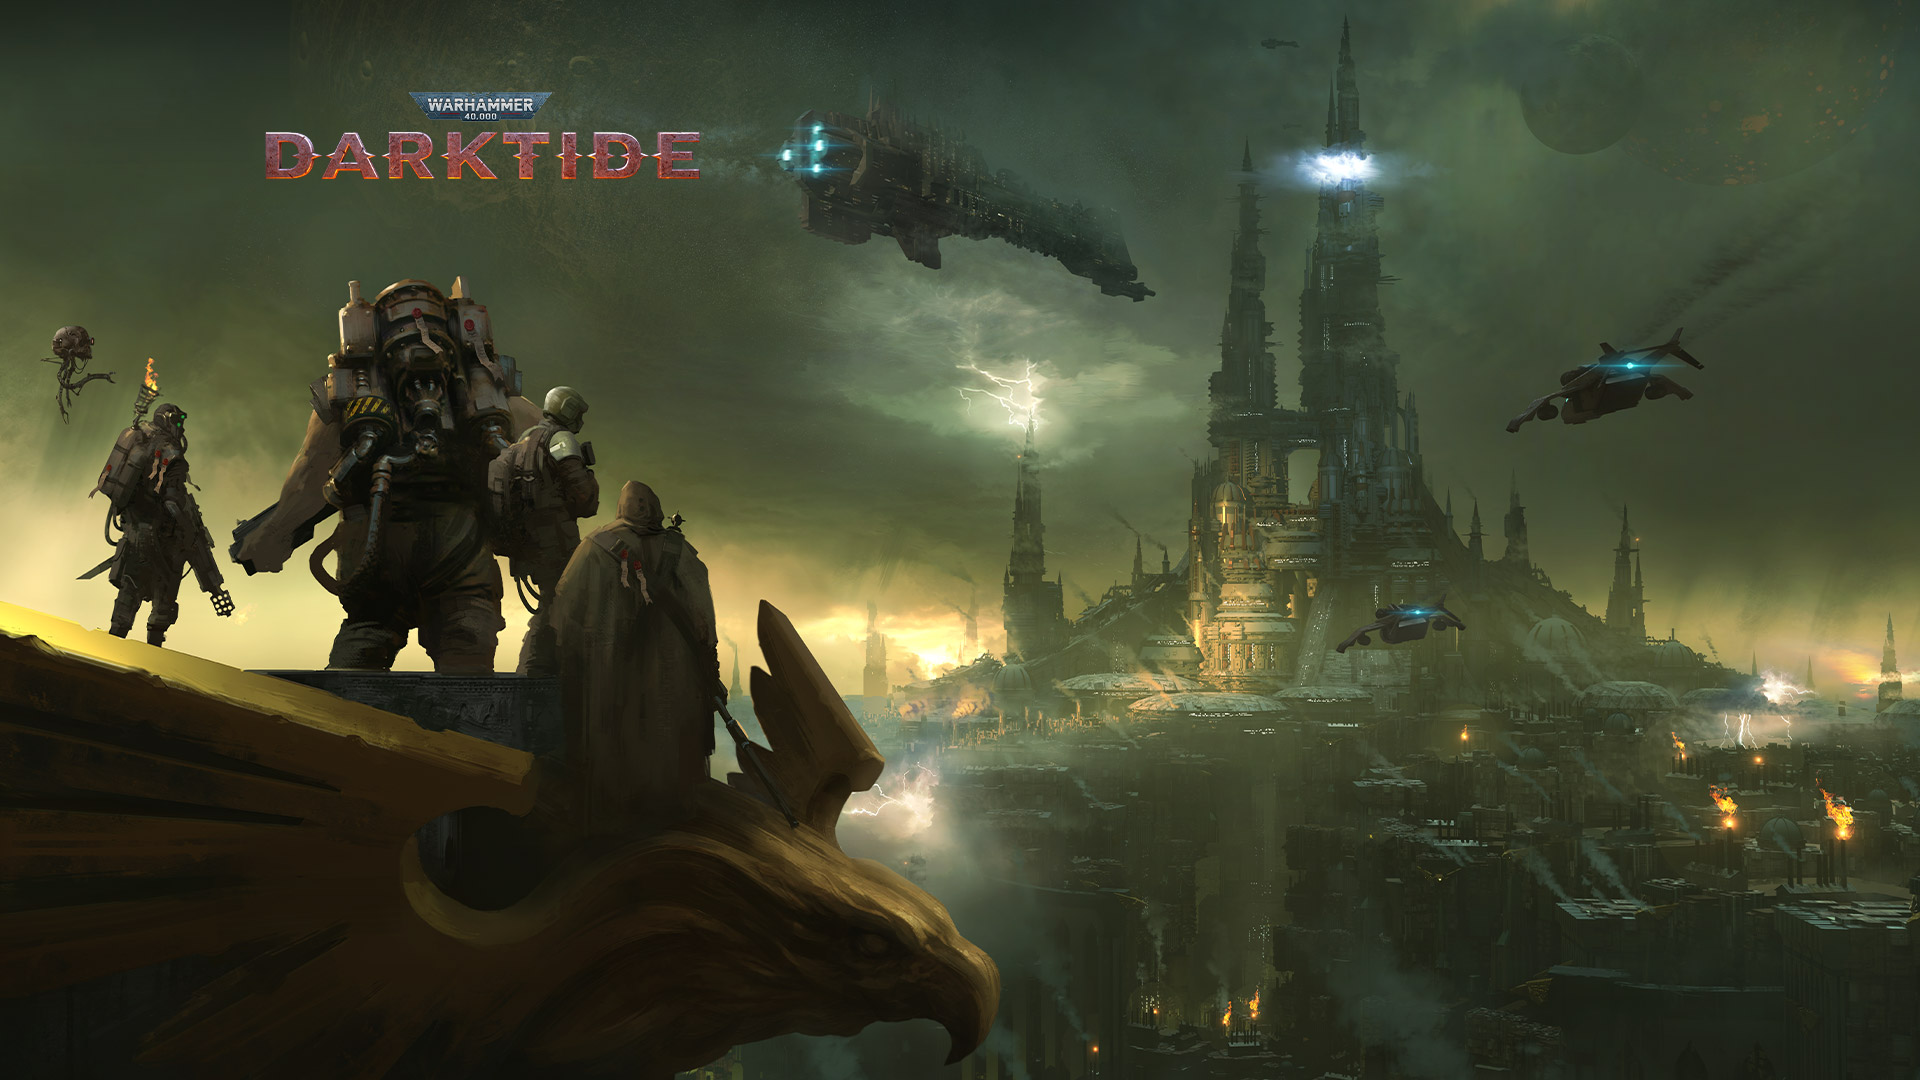 Warhammer 40,000 Darktide กลุ่มตัวละครมองเห็นเมืองที่ปกคลุมไปด้วยหมอก